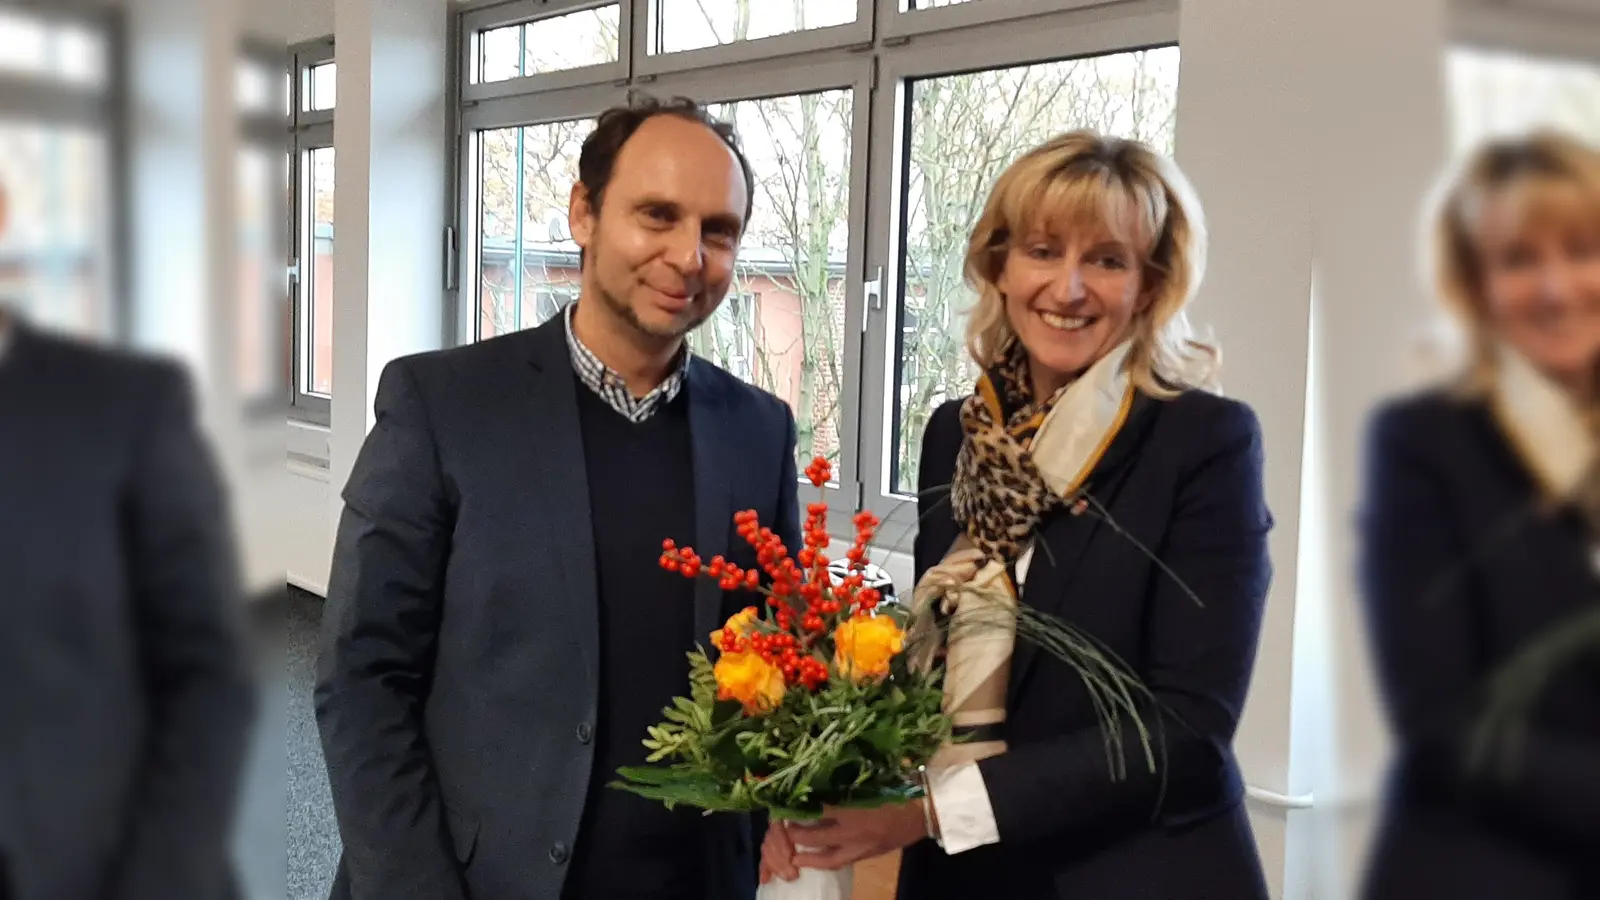 Bürgermeisterin und Stiftungsvorsitzende Andrea Lange begrüßt Lars Niemann neu im Vorstand der Stiftung für Rinteln. <br><br> (Foto: privat)